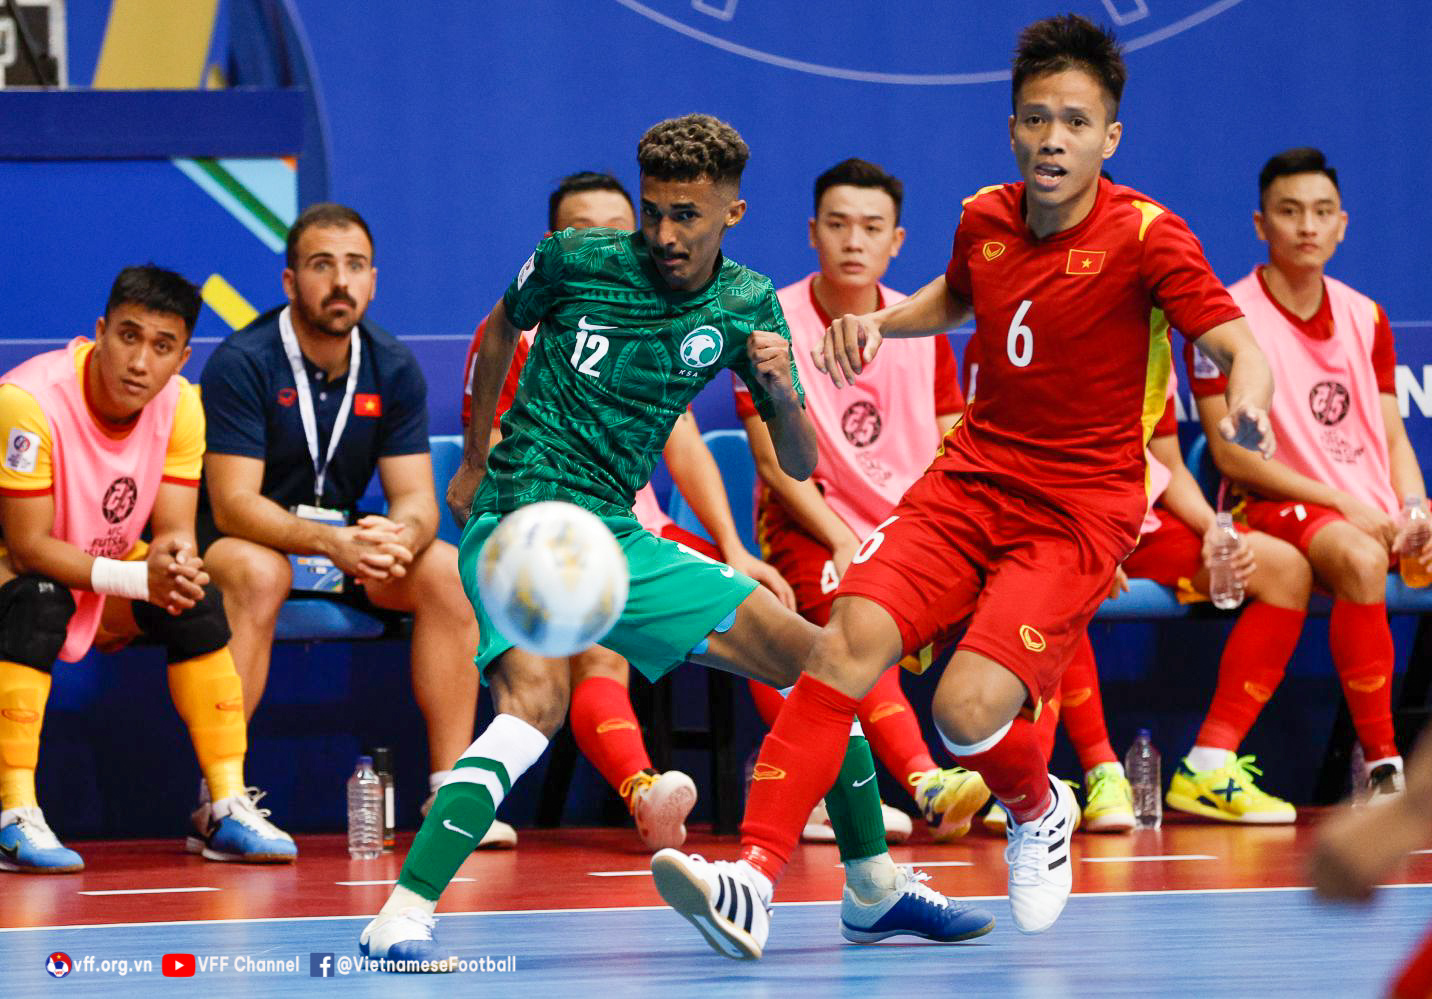 Thắng Ả-rập Xê-út 3-1, ĐT futsal Việt Nam vươn lên đầu bảng - Ảnh 1.